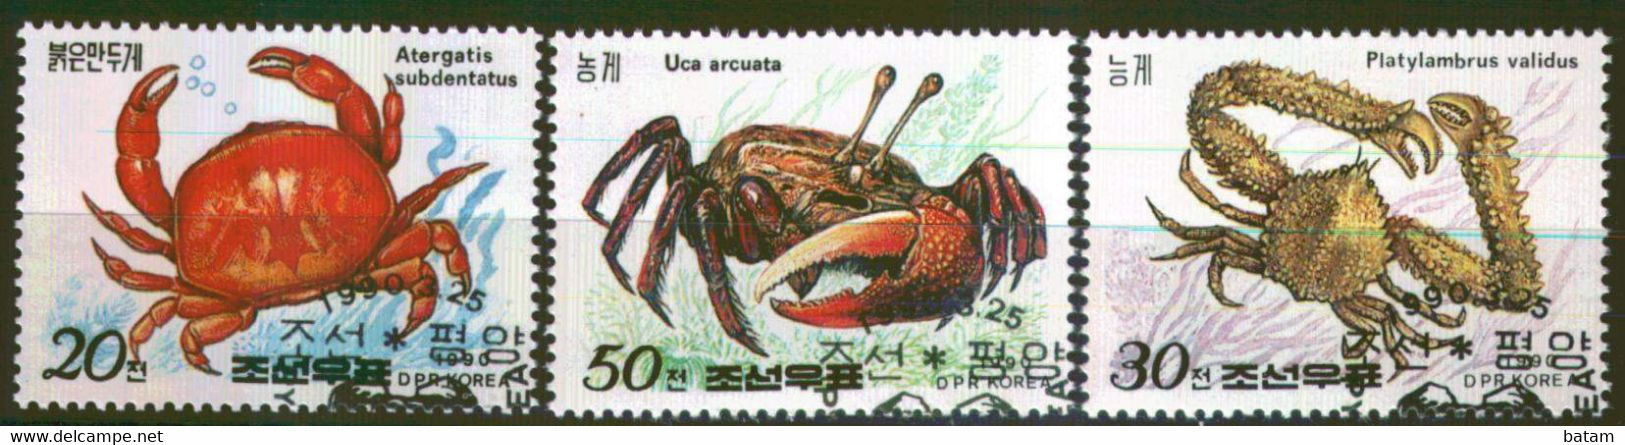 229 - Korea - Crustaceans - Used Set - Crostacei